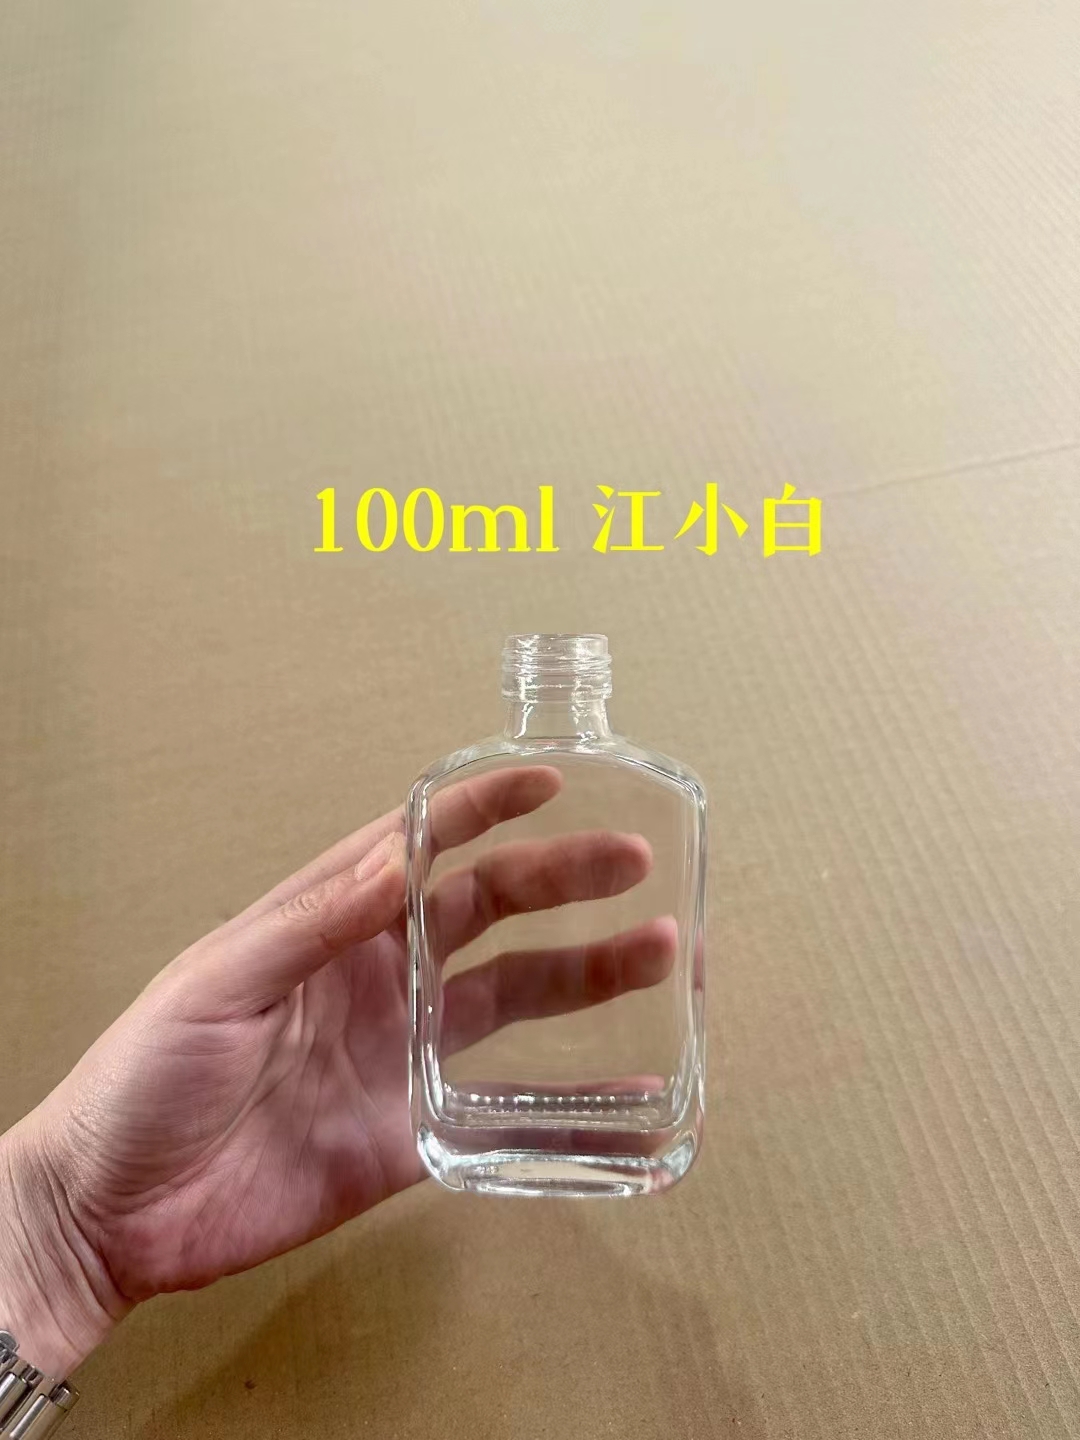 100ml江小白酒瓶定制 佛山扁方瓶供应商 100ml方形玻璃瓶哪里好-报价